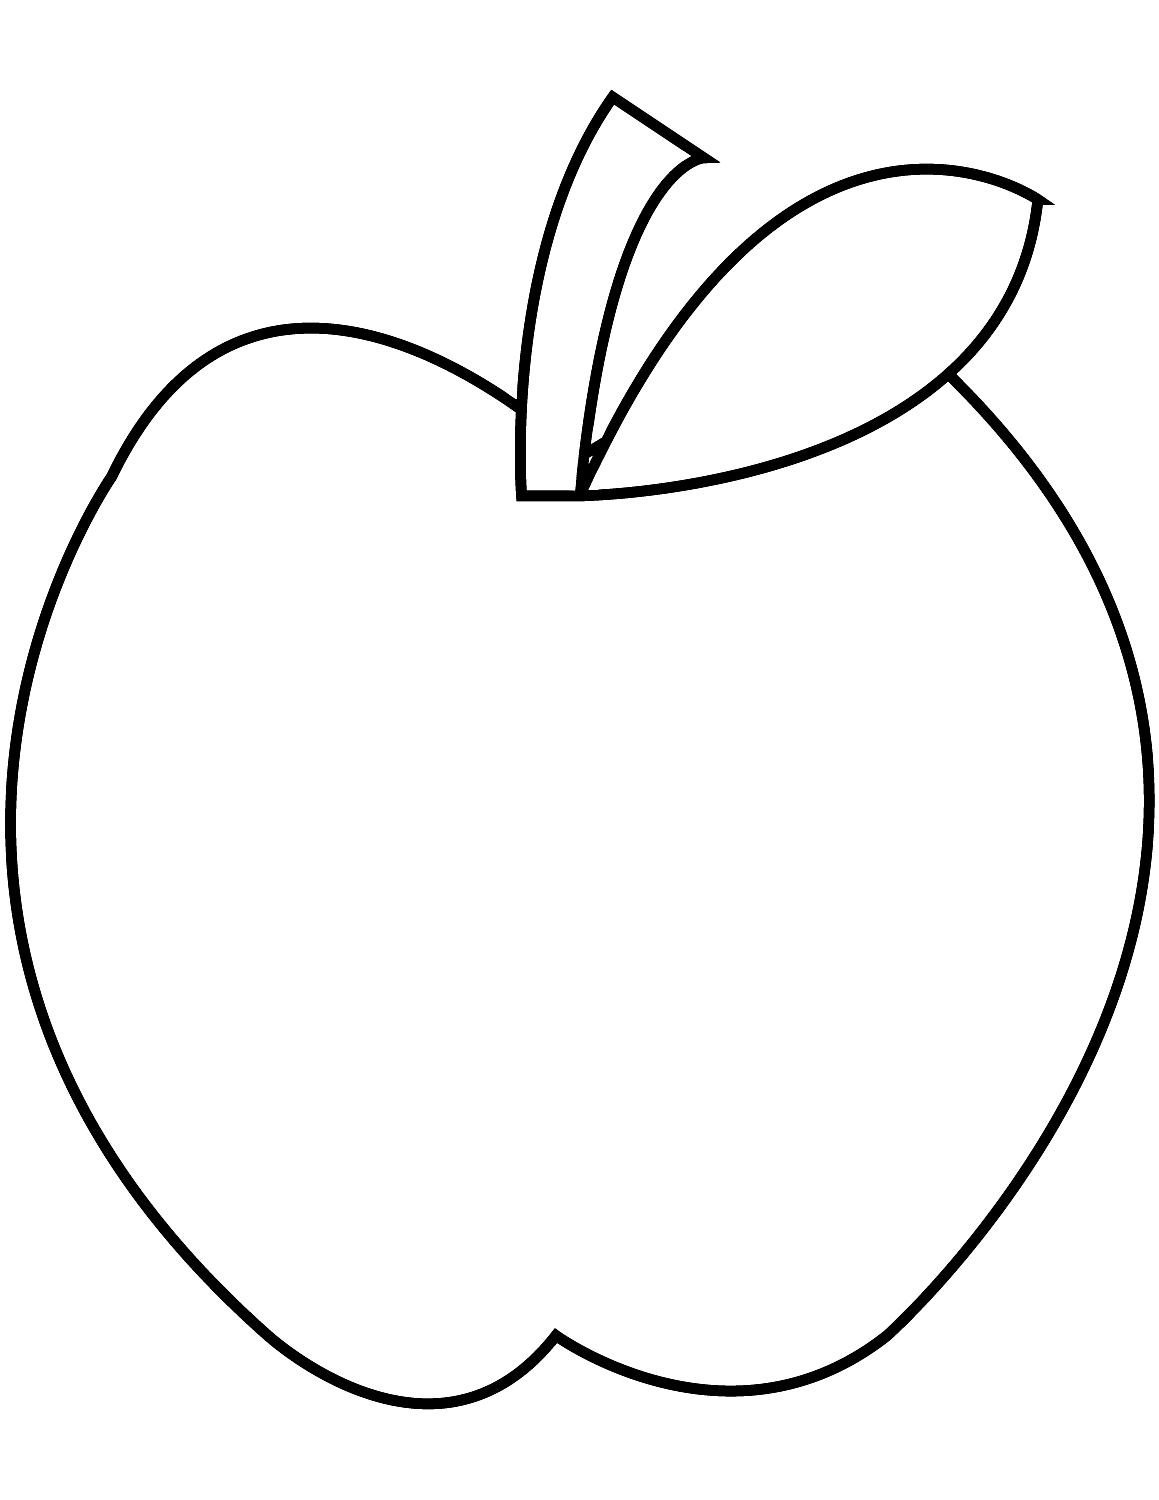 Disegno 16 di mele da stampare e colorare